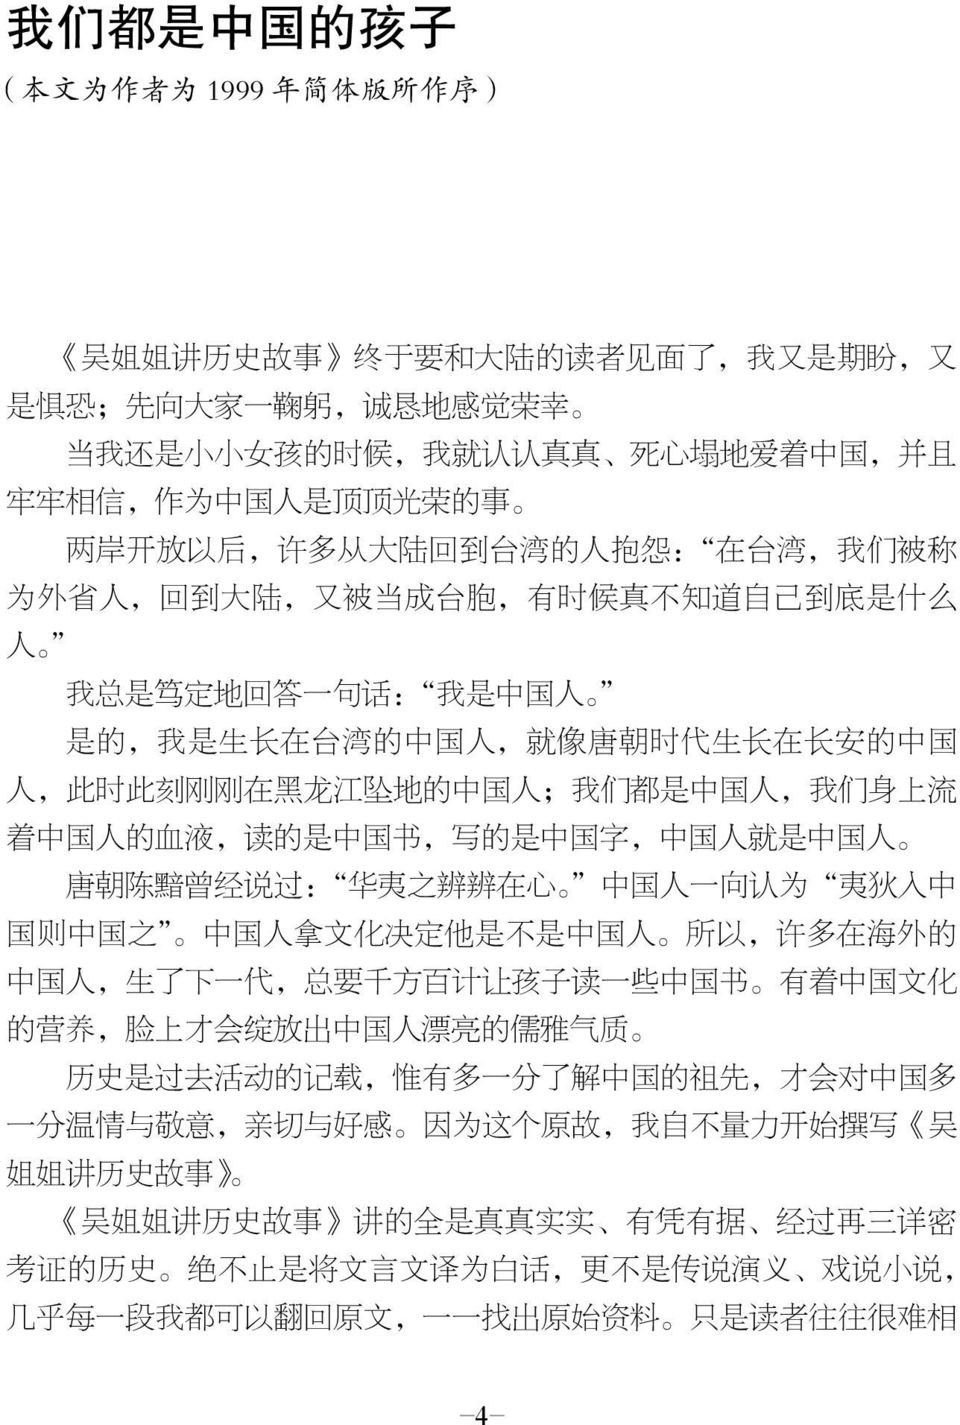 台 湾 的 中 国 人, 就 像 唐 朝 时 代 生 长 在 长 安 的 中 国 人, 此 时 此 刻 刚 刚 在 黑 龙 江 坠 地 的 中 国 人 ; 我 们 都 是 中 国 人, 我 们 身 上 流 着 中 国 人 的 血 液, 读 的 是 中 国 书, 写 的 是 中 国 字, 中 国 人 就 是 中 国 人 唐 朝 陈 黯 曾 经 说 过 : 华 夷 之 辨 辨 在 心 中 国 人 一